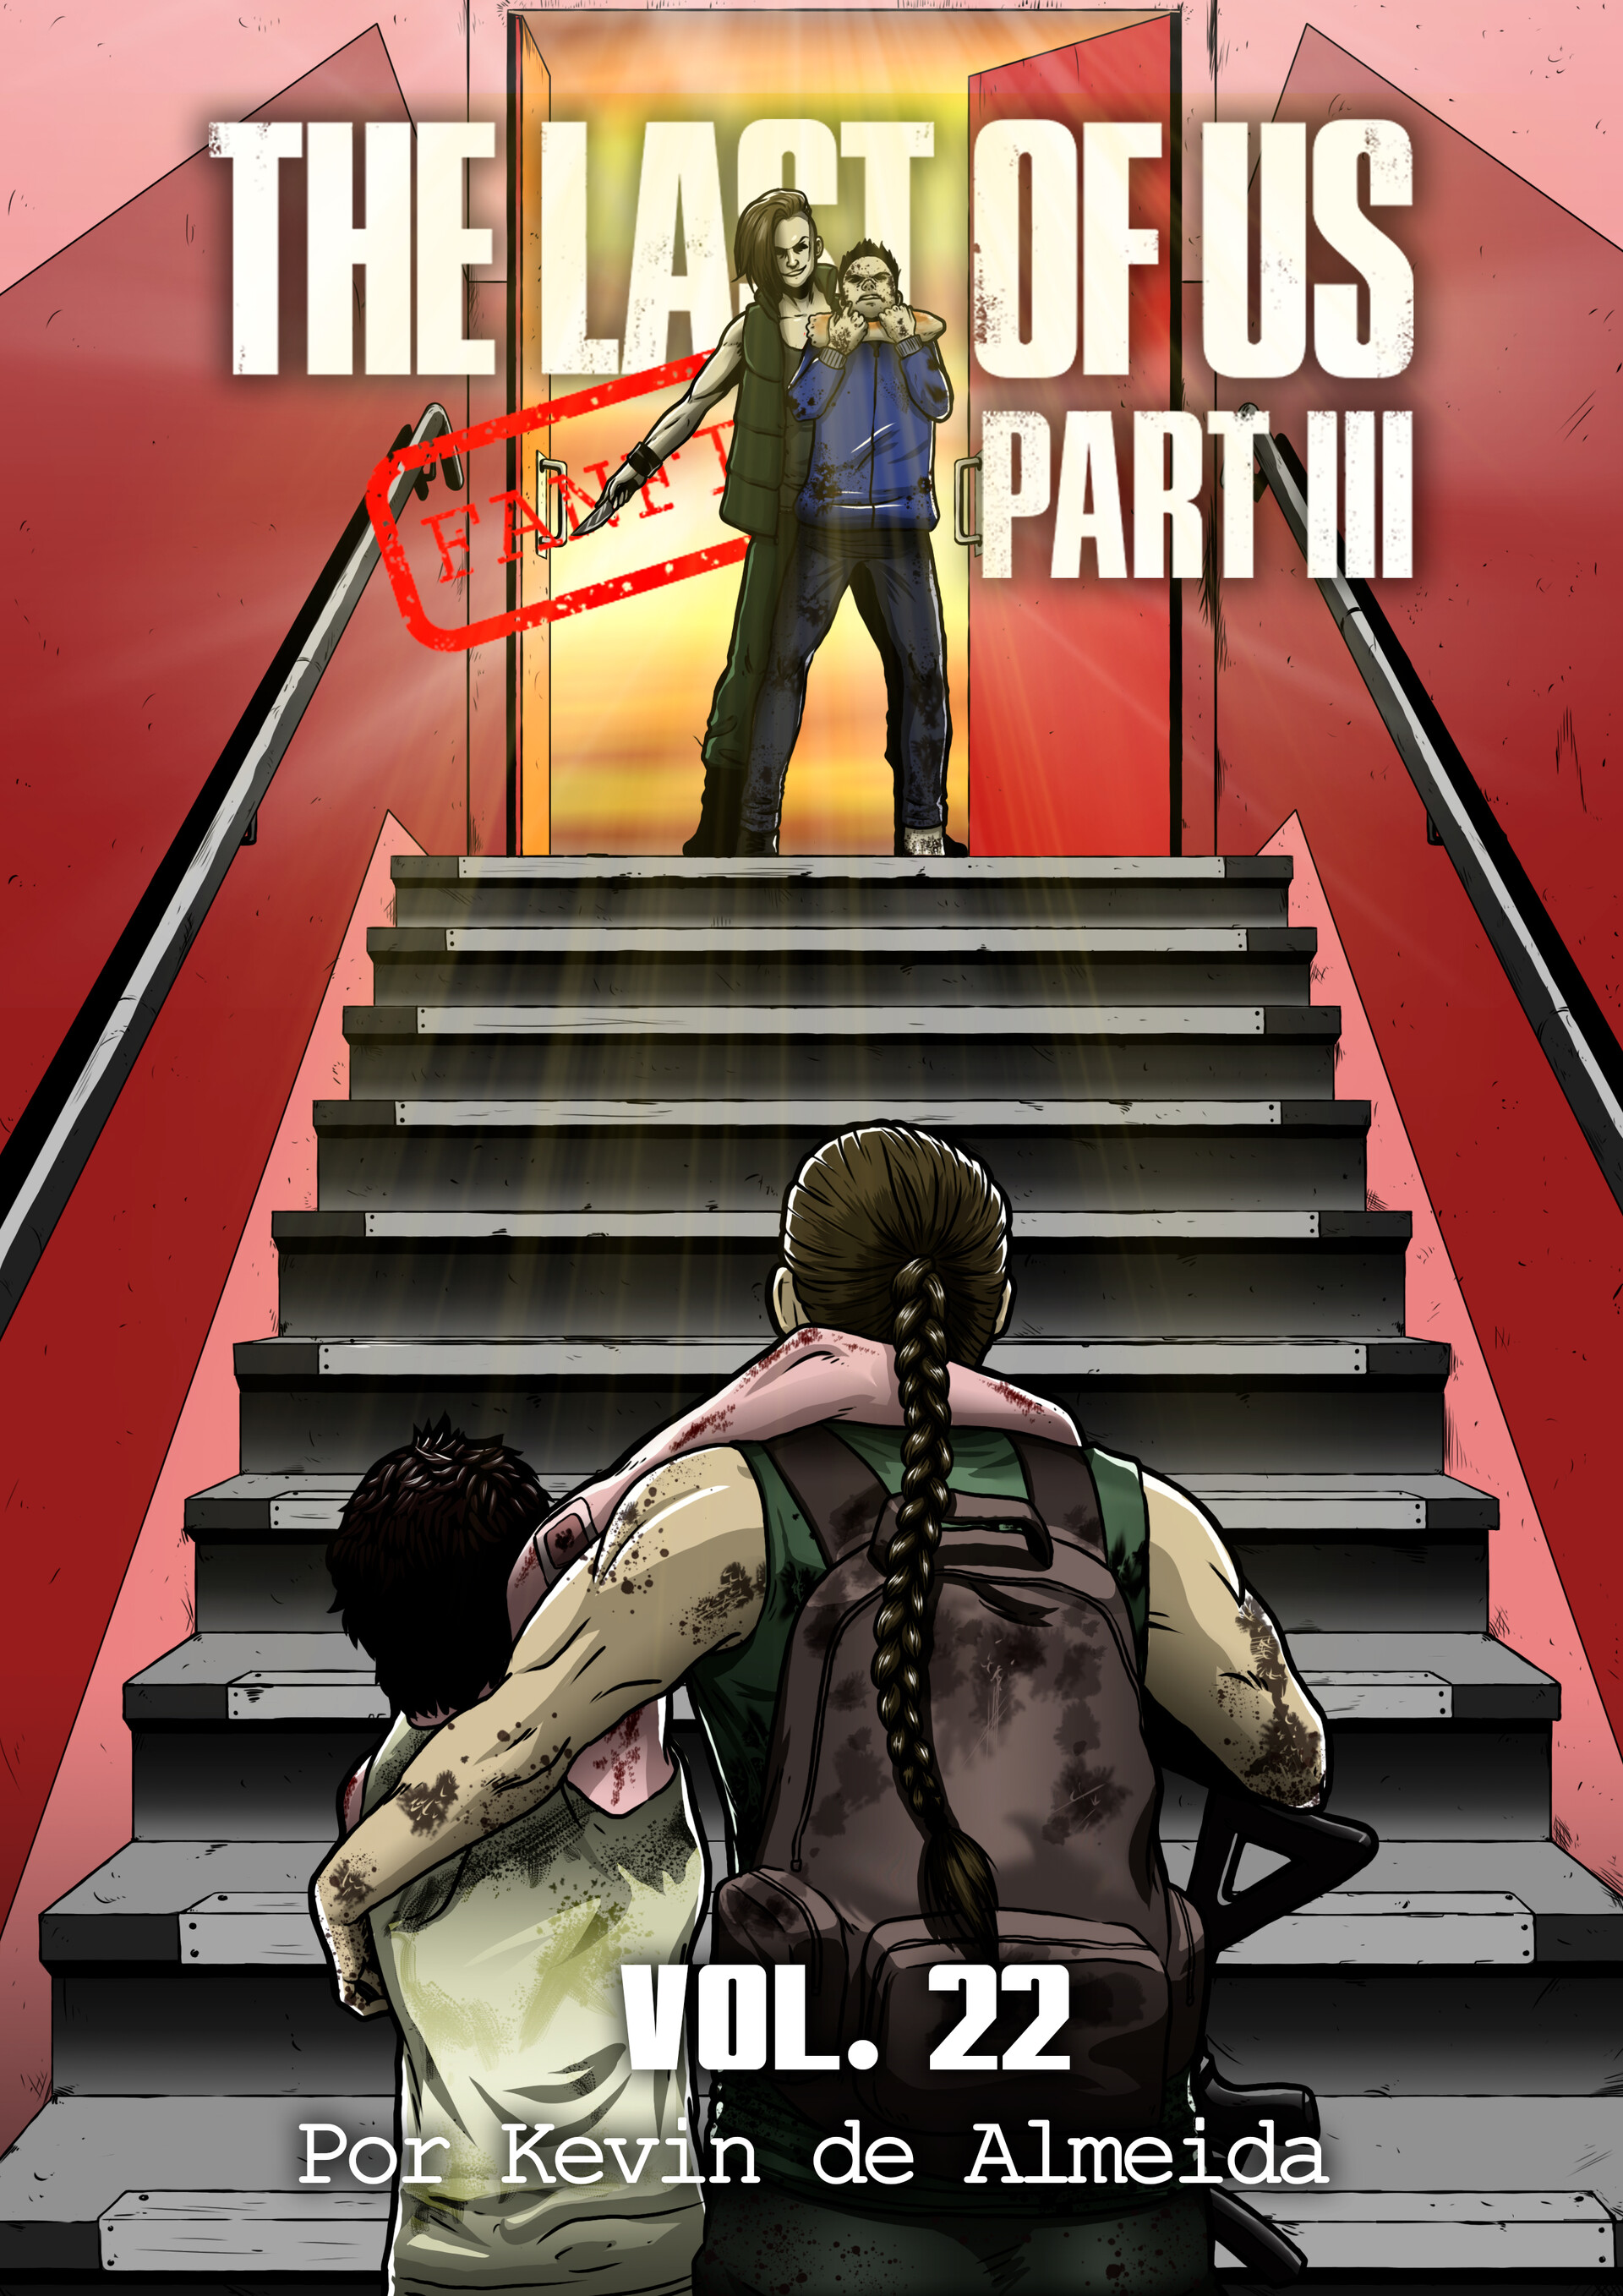 The Last of Us - Part 3 - Advert Version by diamonddead-Art on DeviantArt